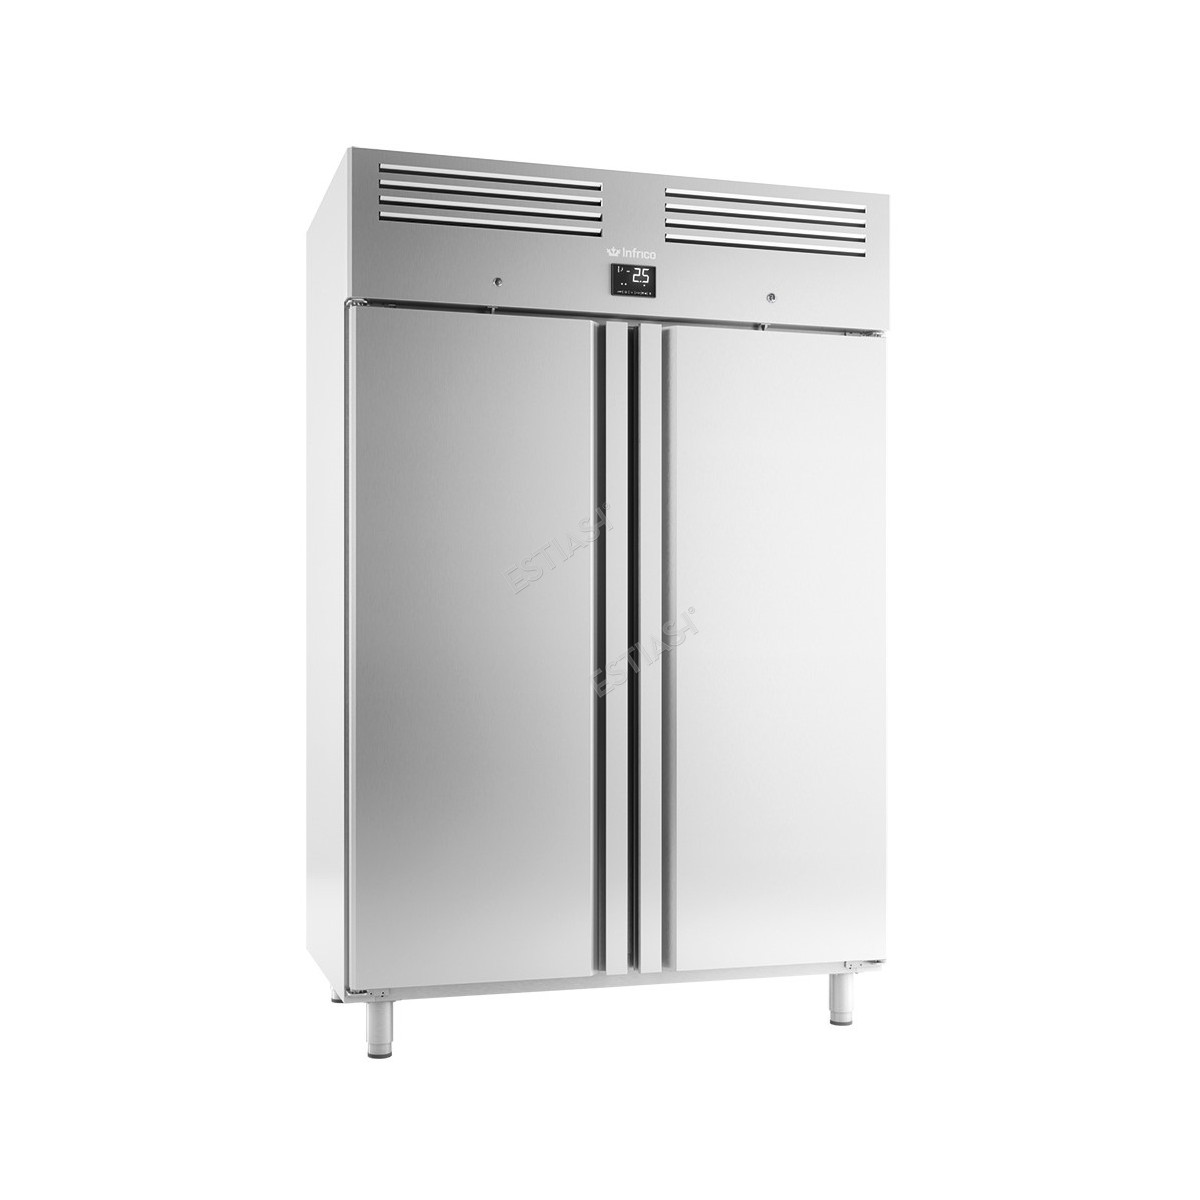 Ψυγείο θάλαμος συντήρησης δίπορτο για λαμαρίνες 60x40